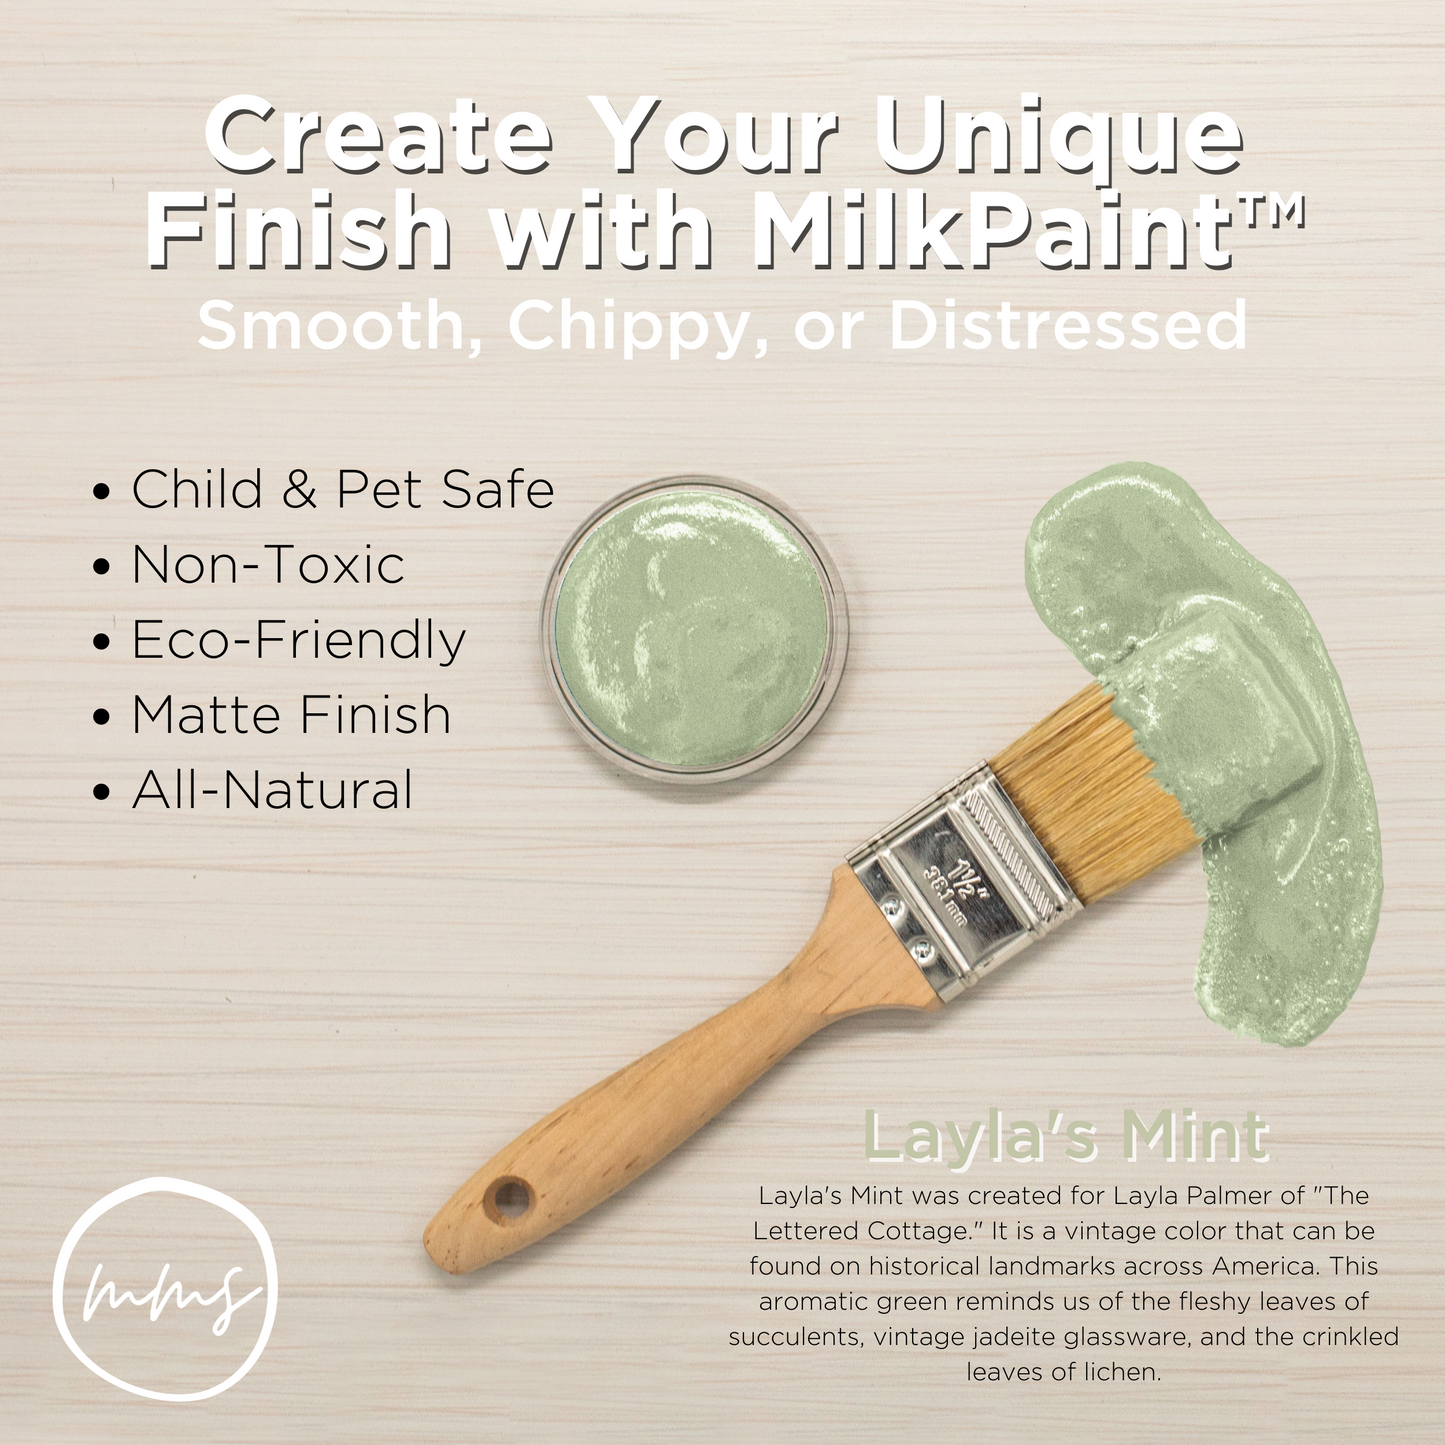 MilkPaint™ - Layla's Mint